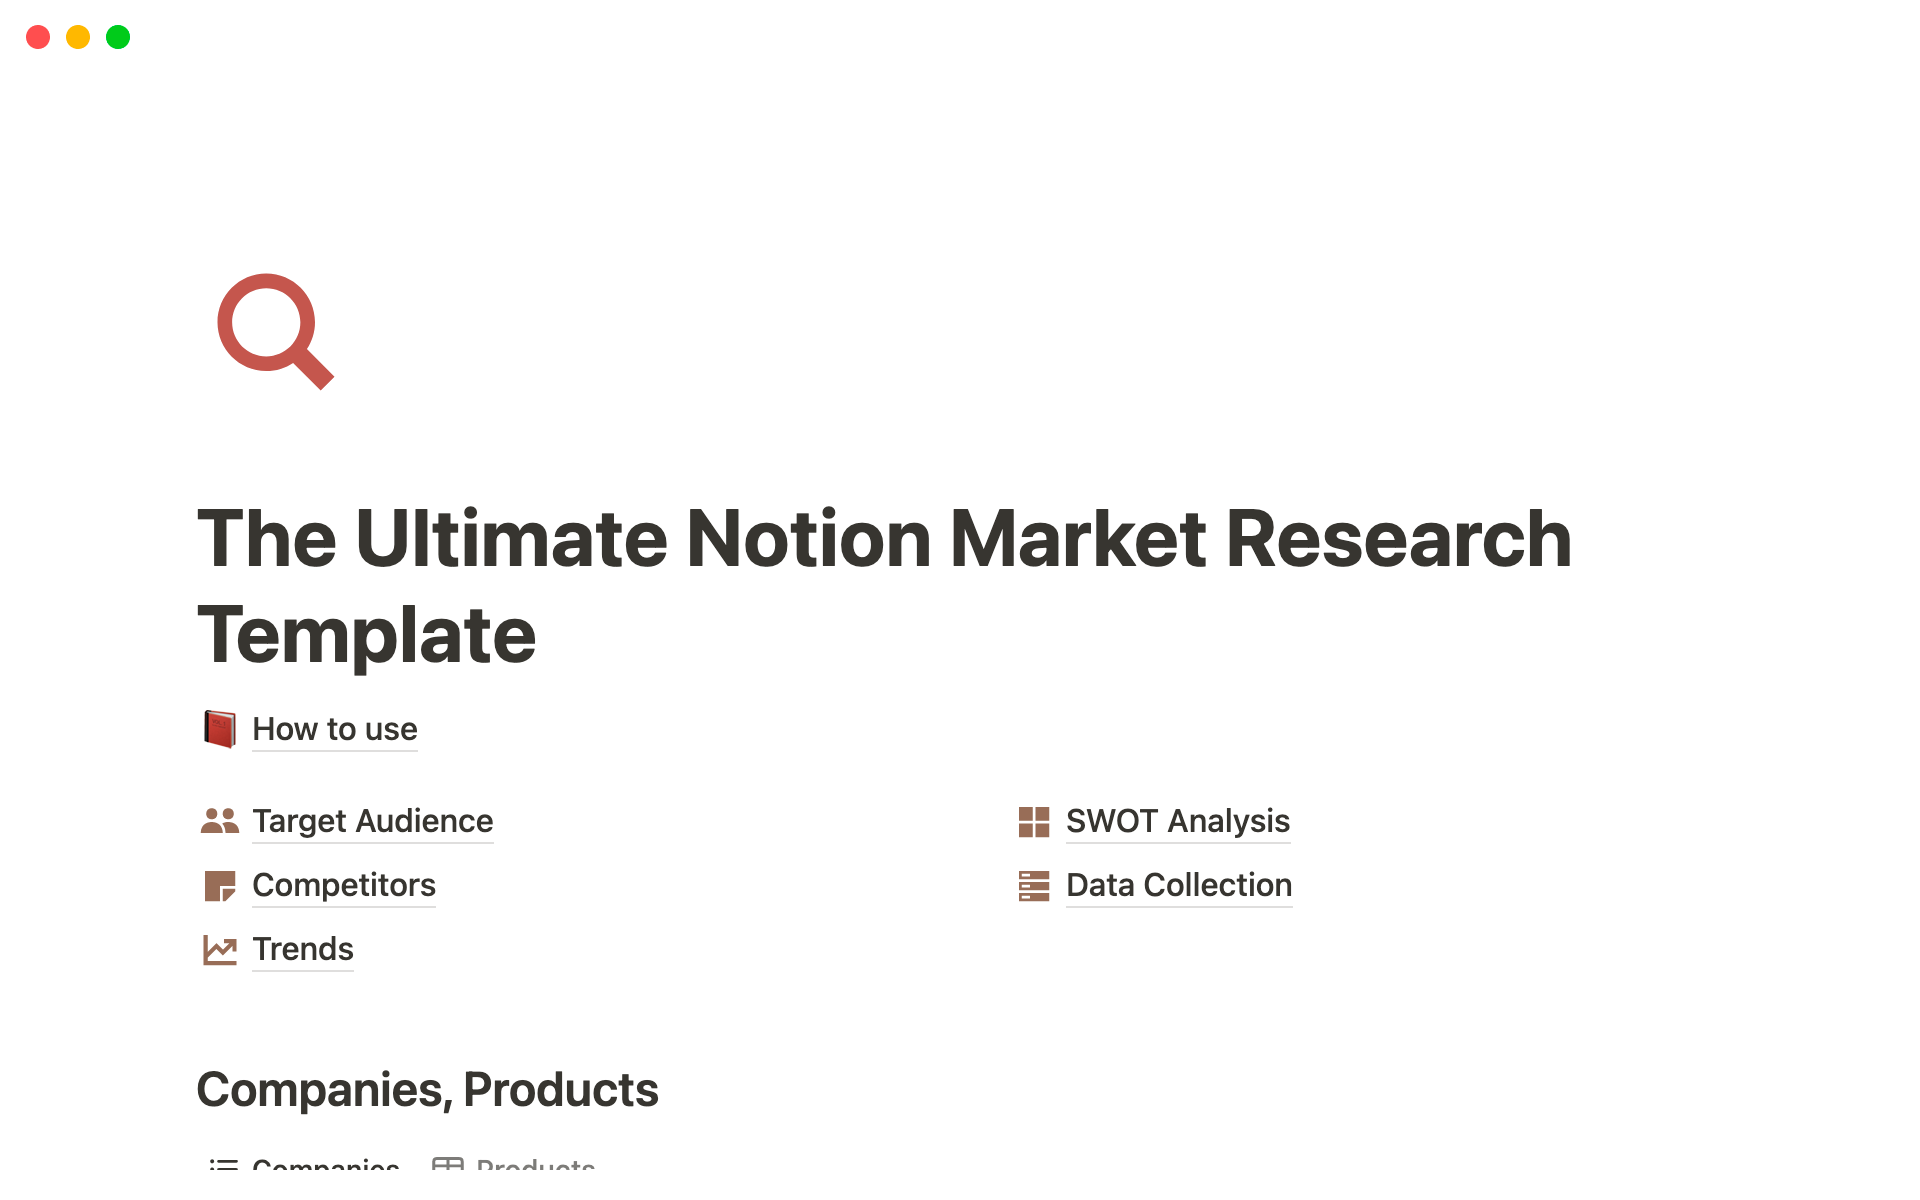 Uma prévia do modelo para The Ultimate Notion Market Research Template